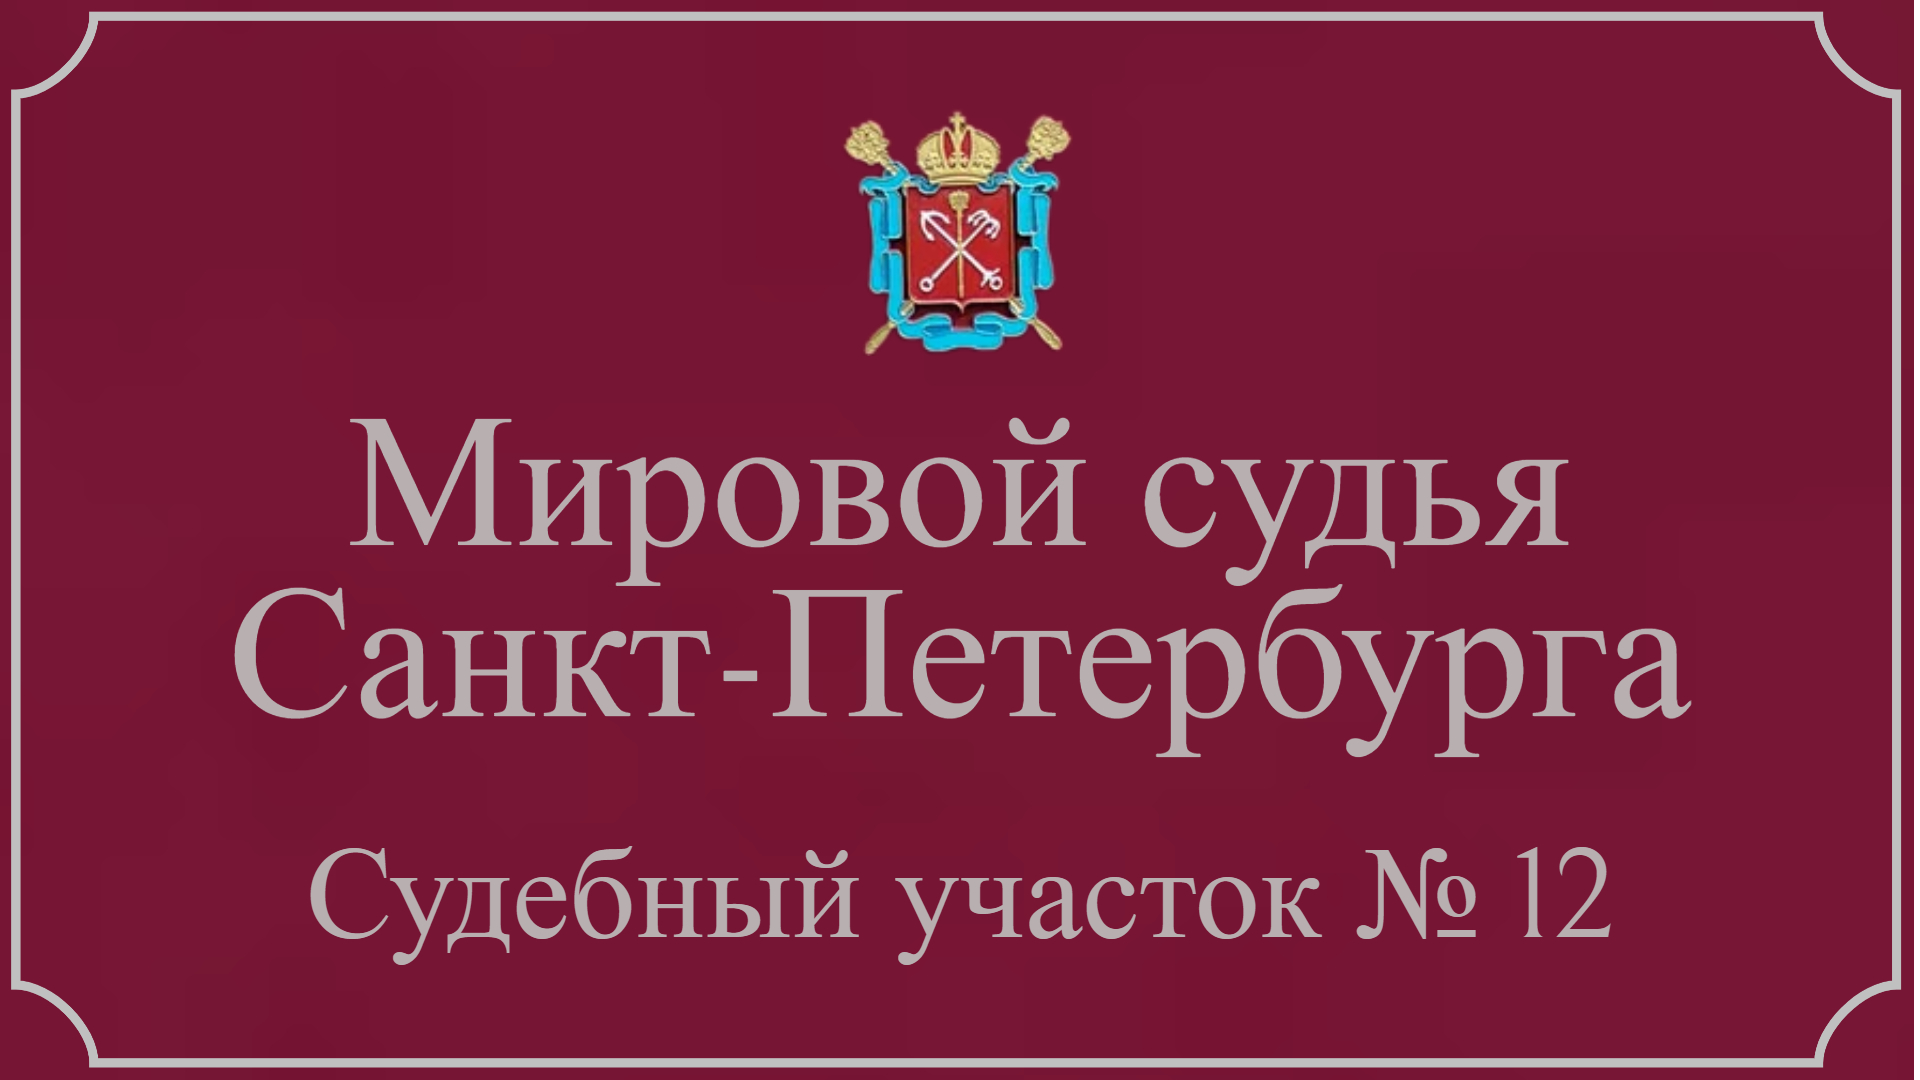 Информация по 12 судебному участку в Санкт-Петербурге.